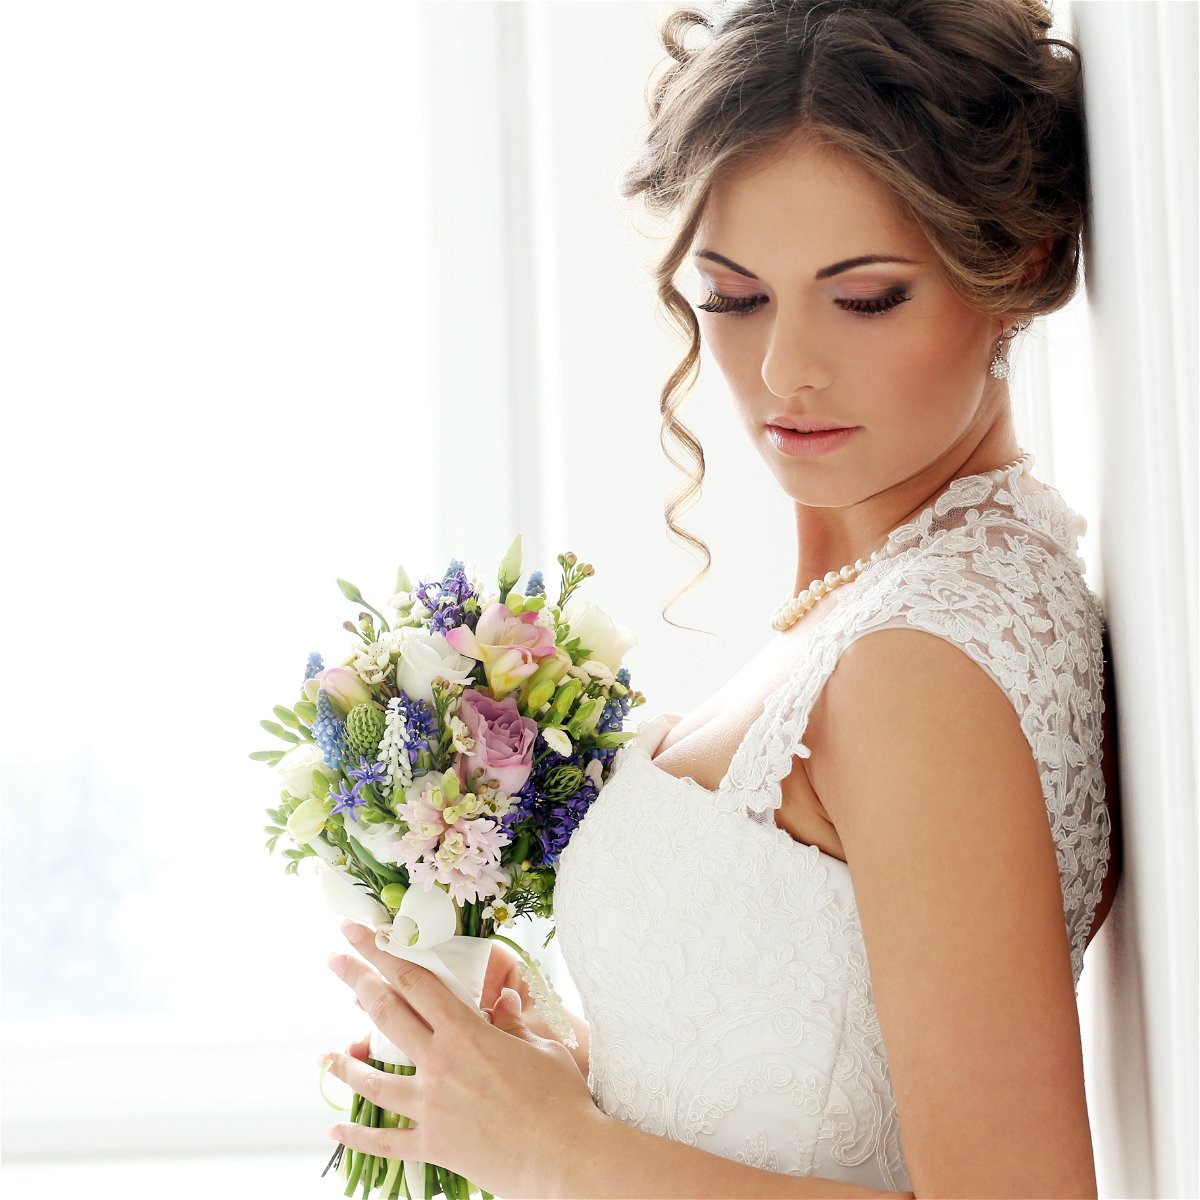 Come scegliere il bouquet da sposa: tipologie e significato